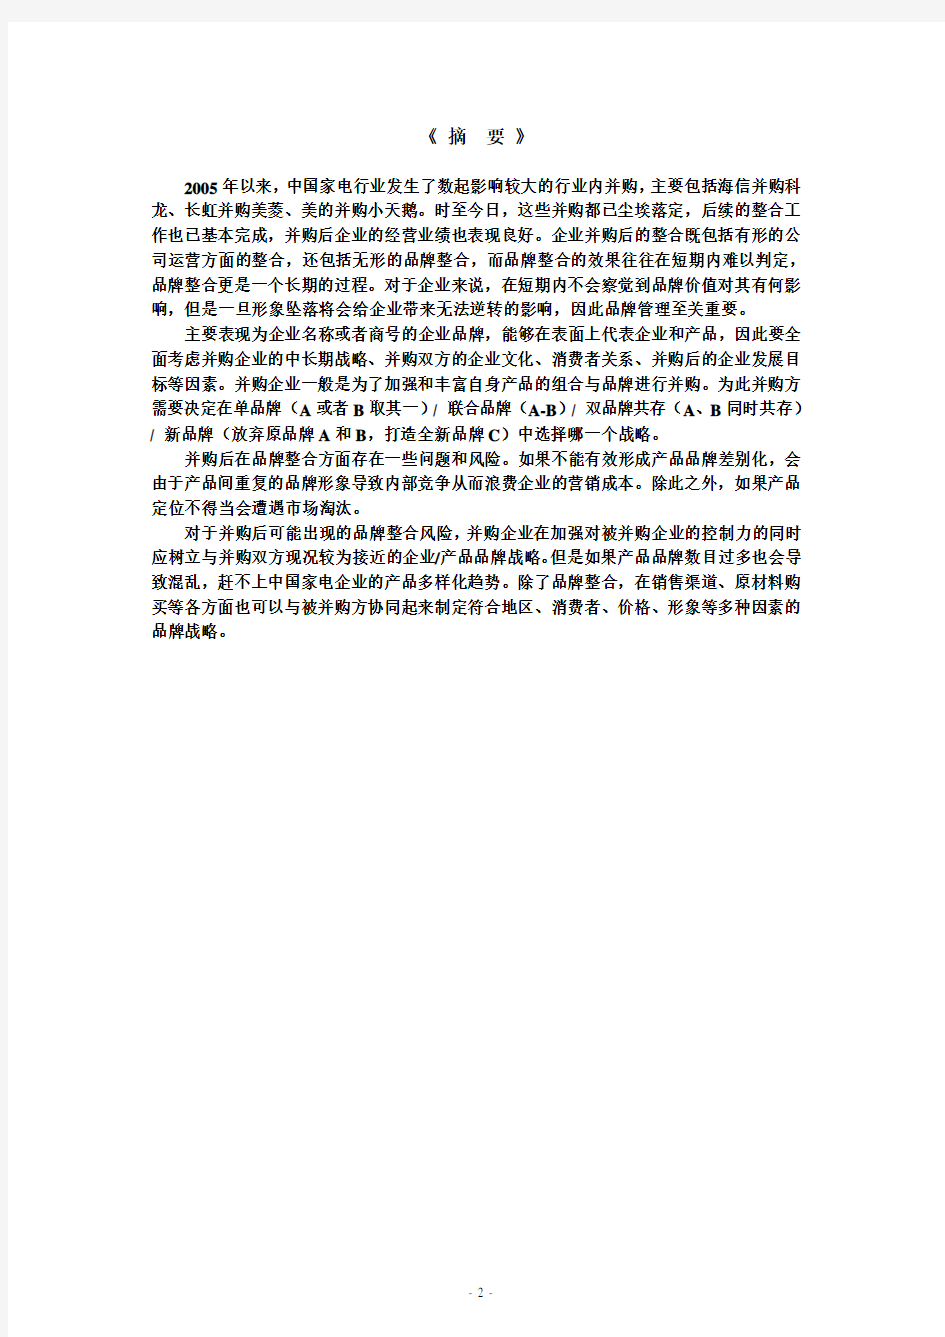 家电行业-中国家电企业并购后的品牌整合(PDF 13页)